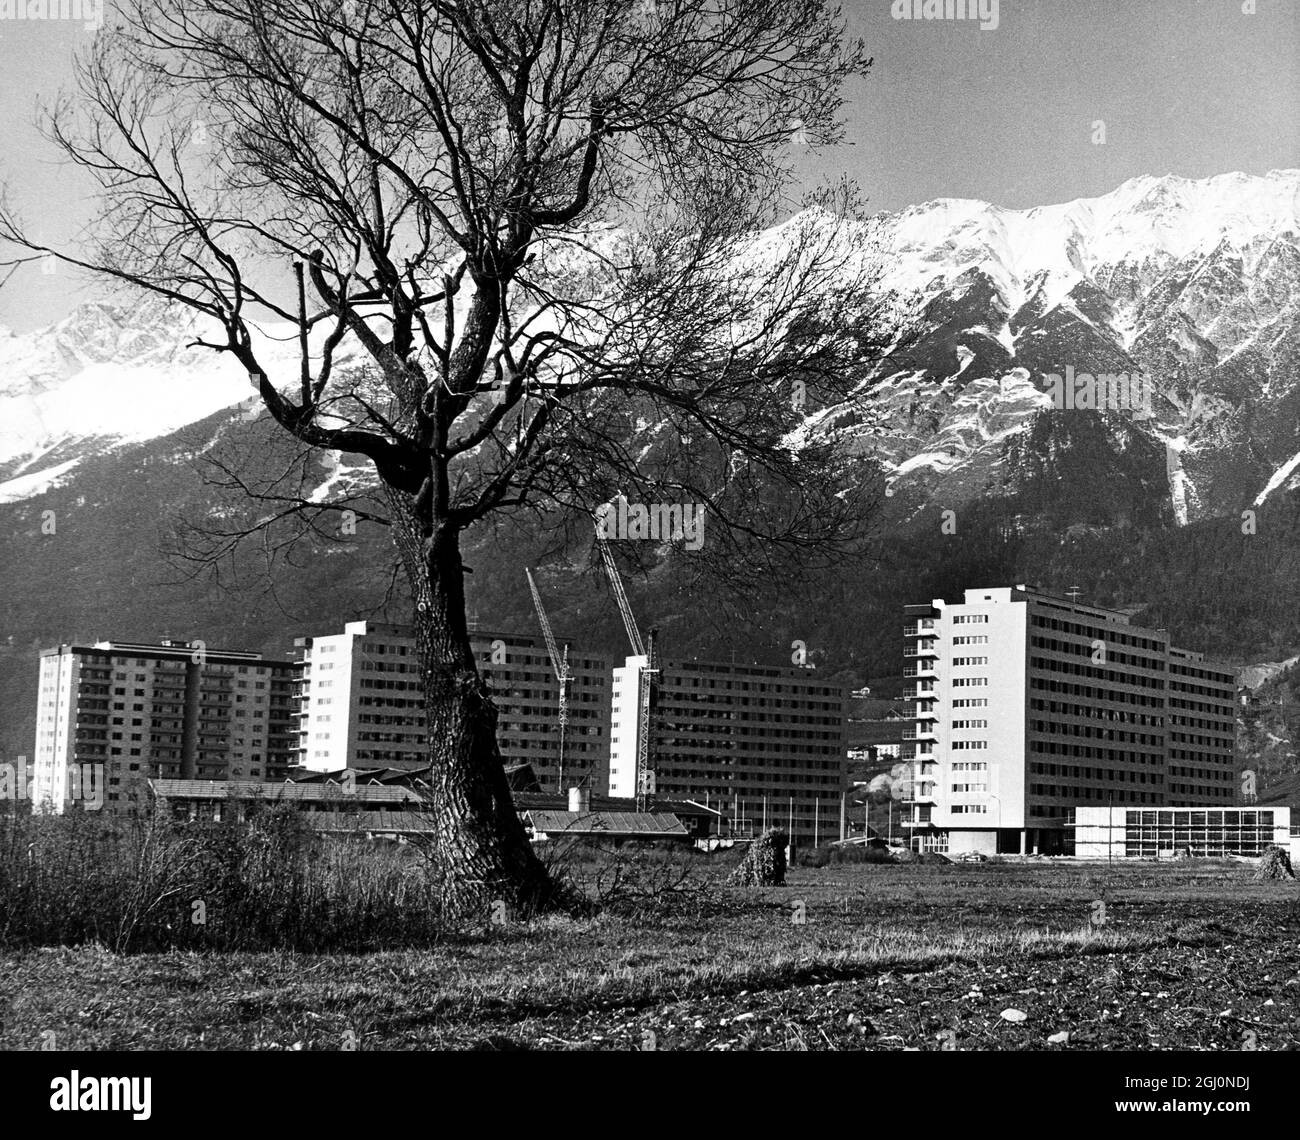 Innsbruck, Autriche : Une vue générale du village olympique d'Innsbruck , photographié sur fond de montagnes des Alpes du Nord. Le village sera ouvert aux athlètes de 33 nations participant aux Jeux Olympiques d'hiver le 15 janvier 1964 . Les Jeux Olympiques commenceront le 29 janvier . Il y a un total de 1013 chambres dans les maisons modernes , avec cuisines et salles à manger au rez-de-chaussée . 20 novembre 1963 Banque D'Images